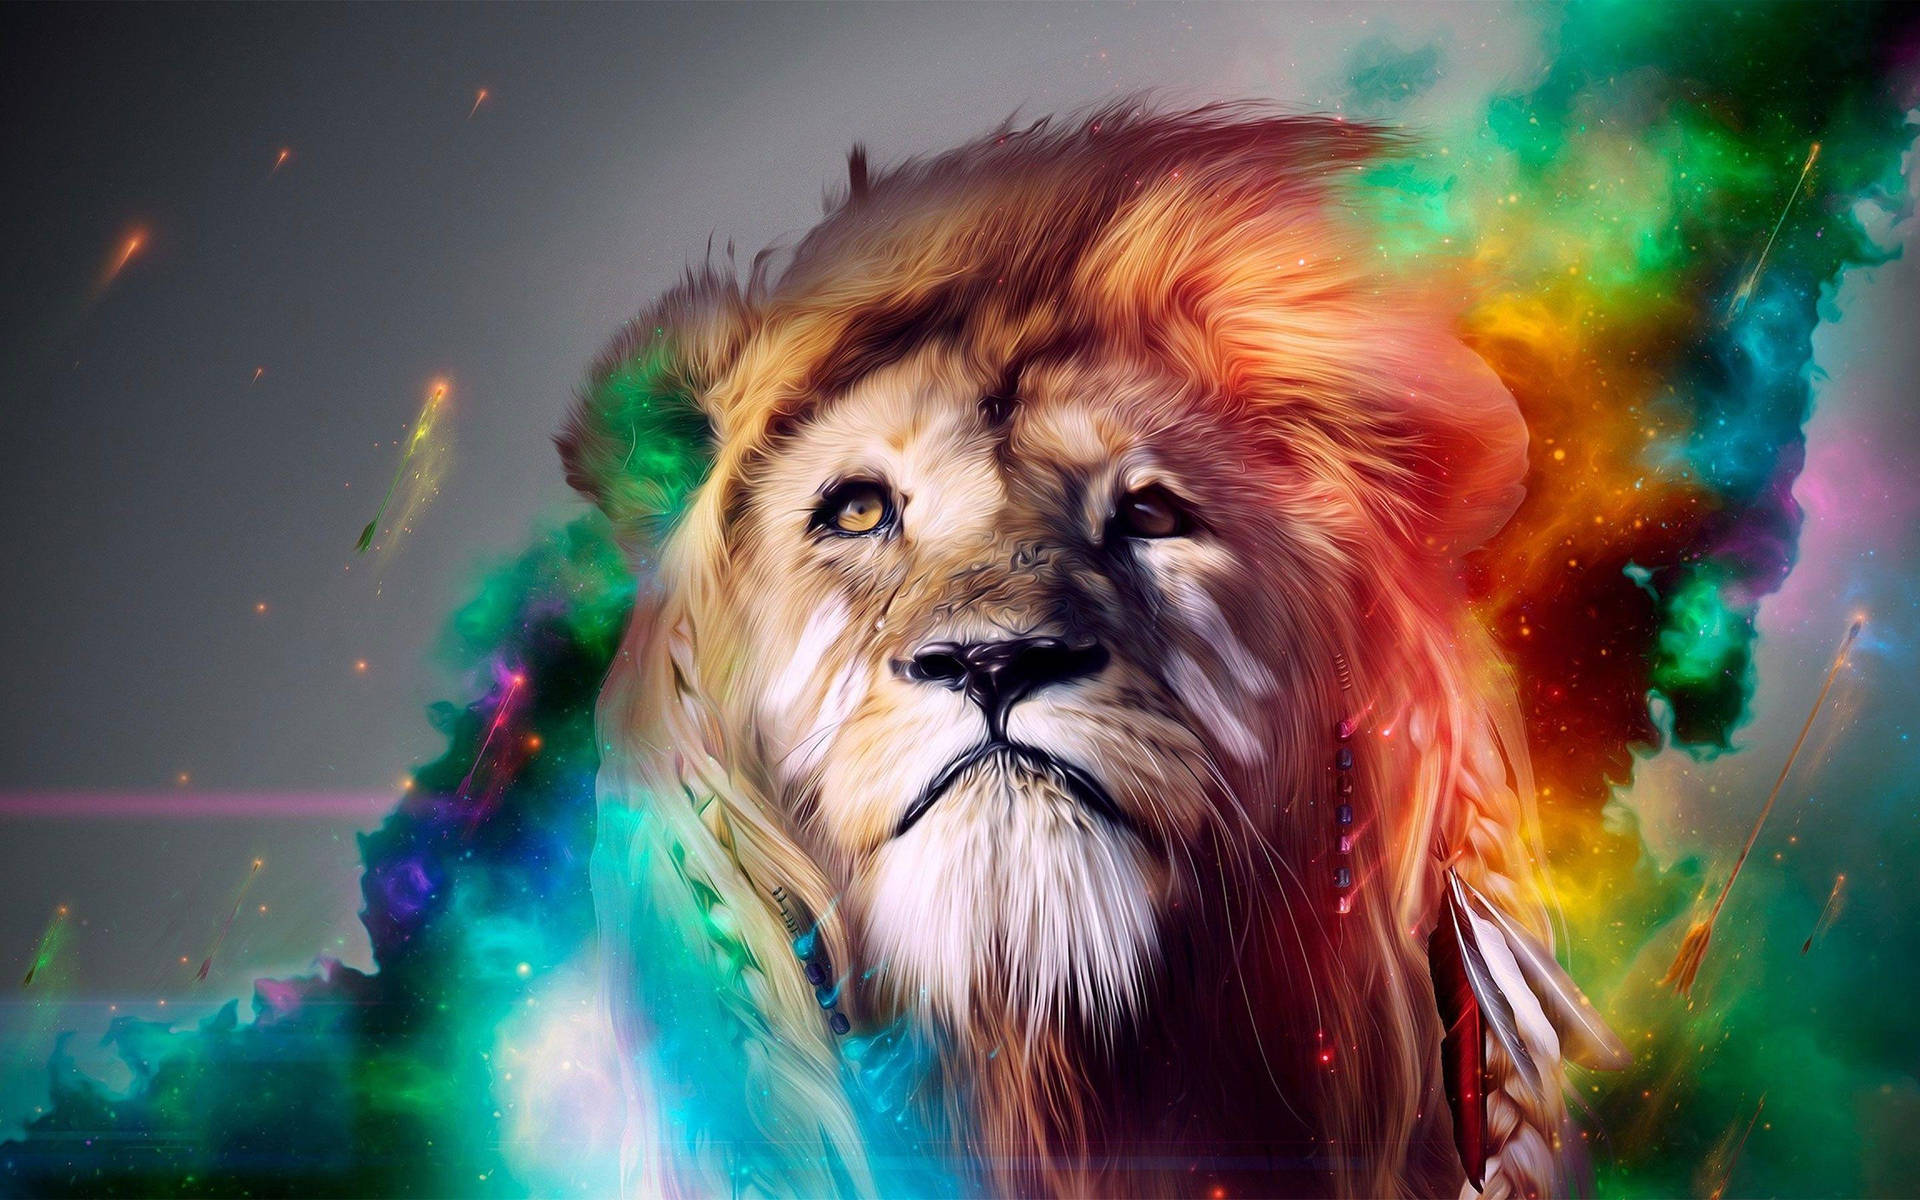 Lion With Nebula Cool Hd